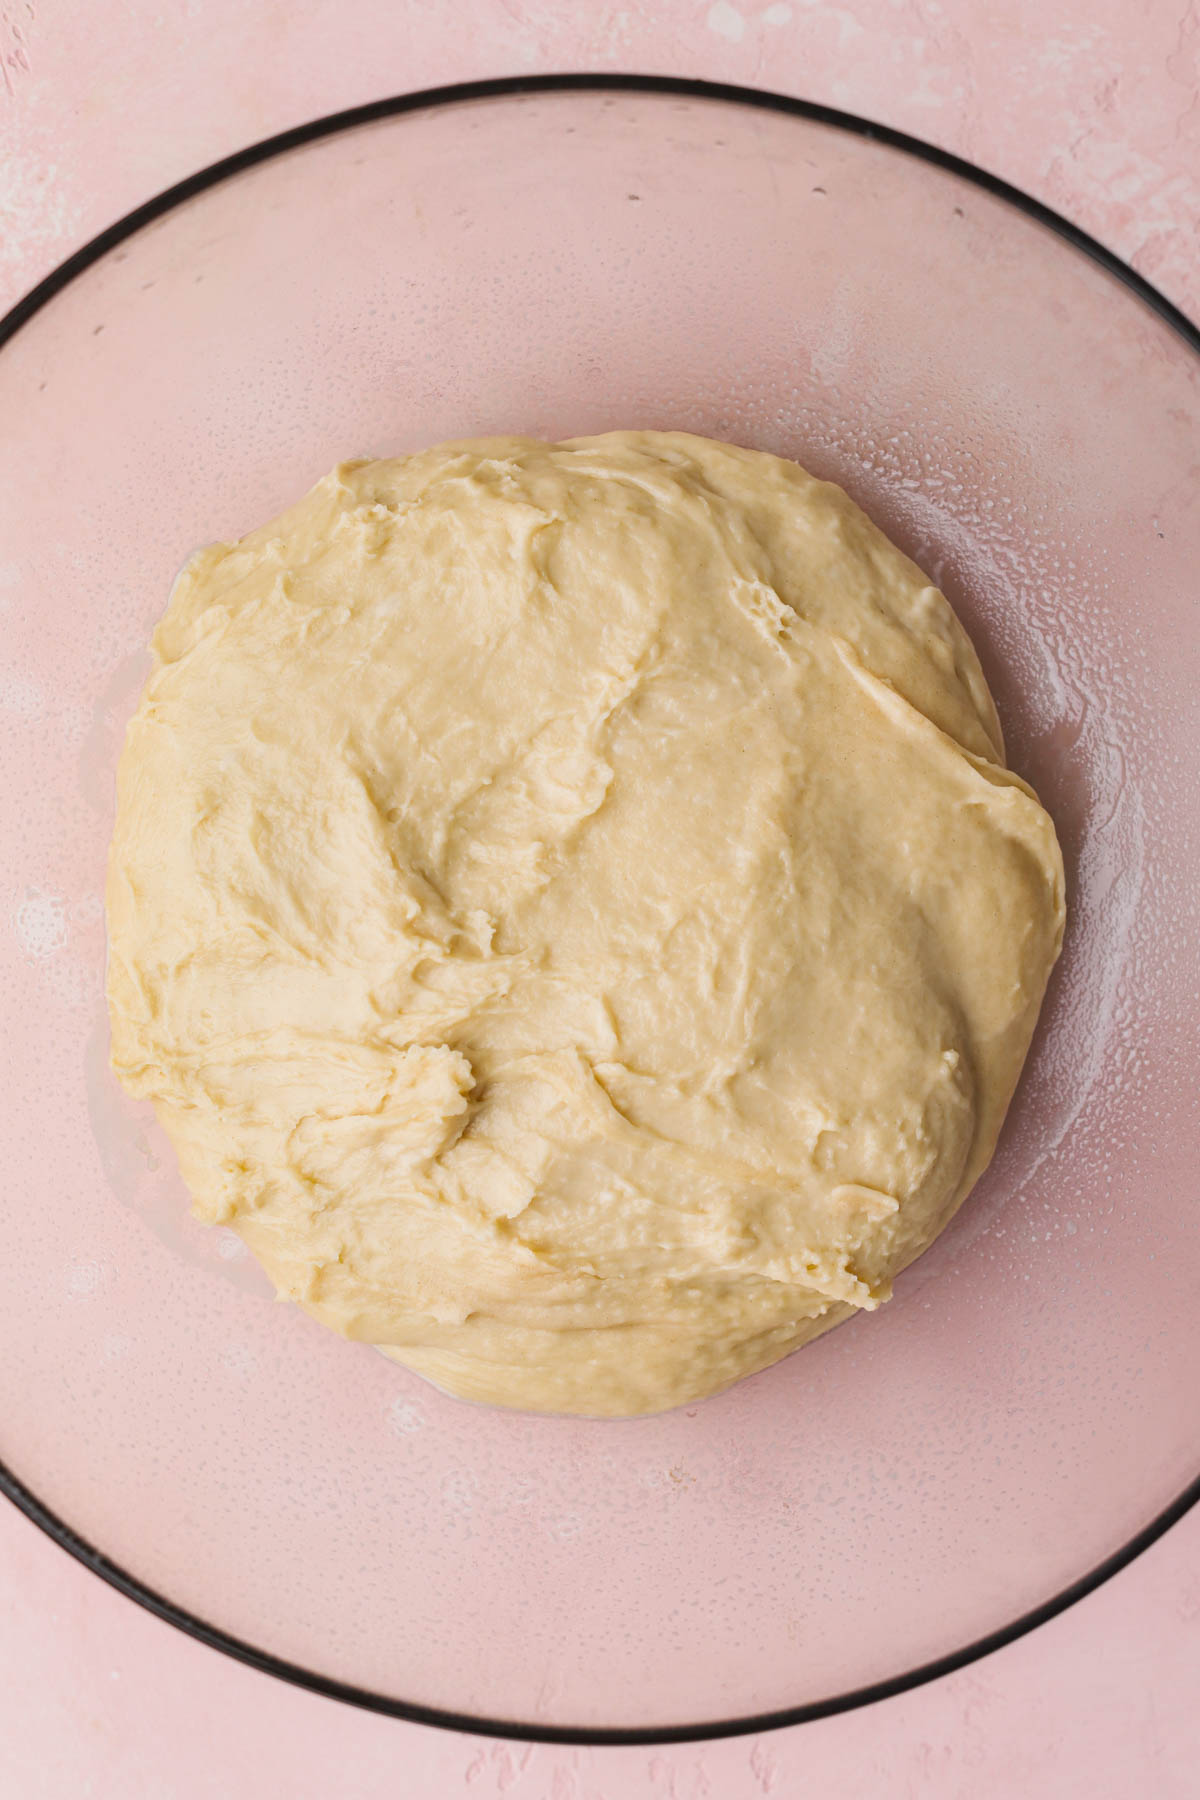 Mixed dough.